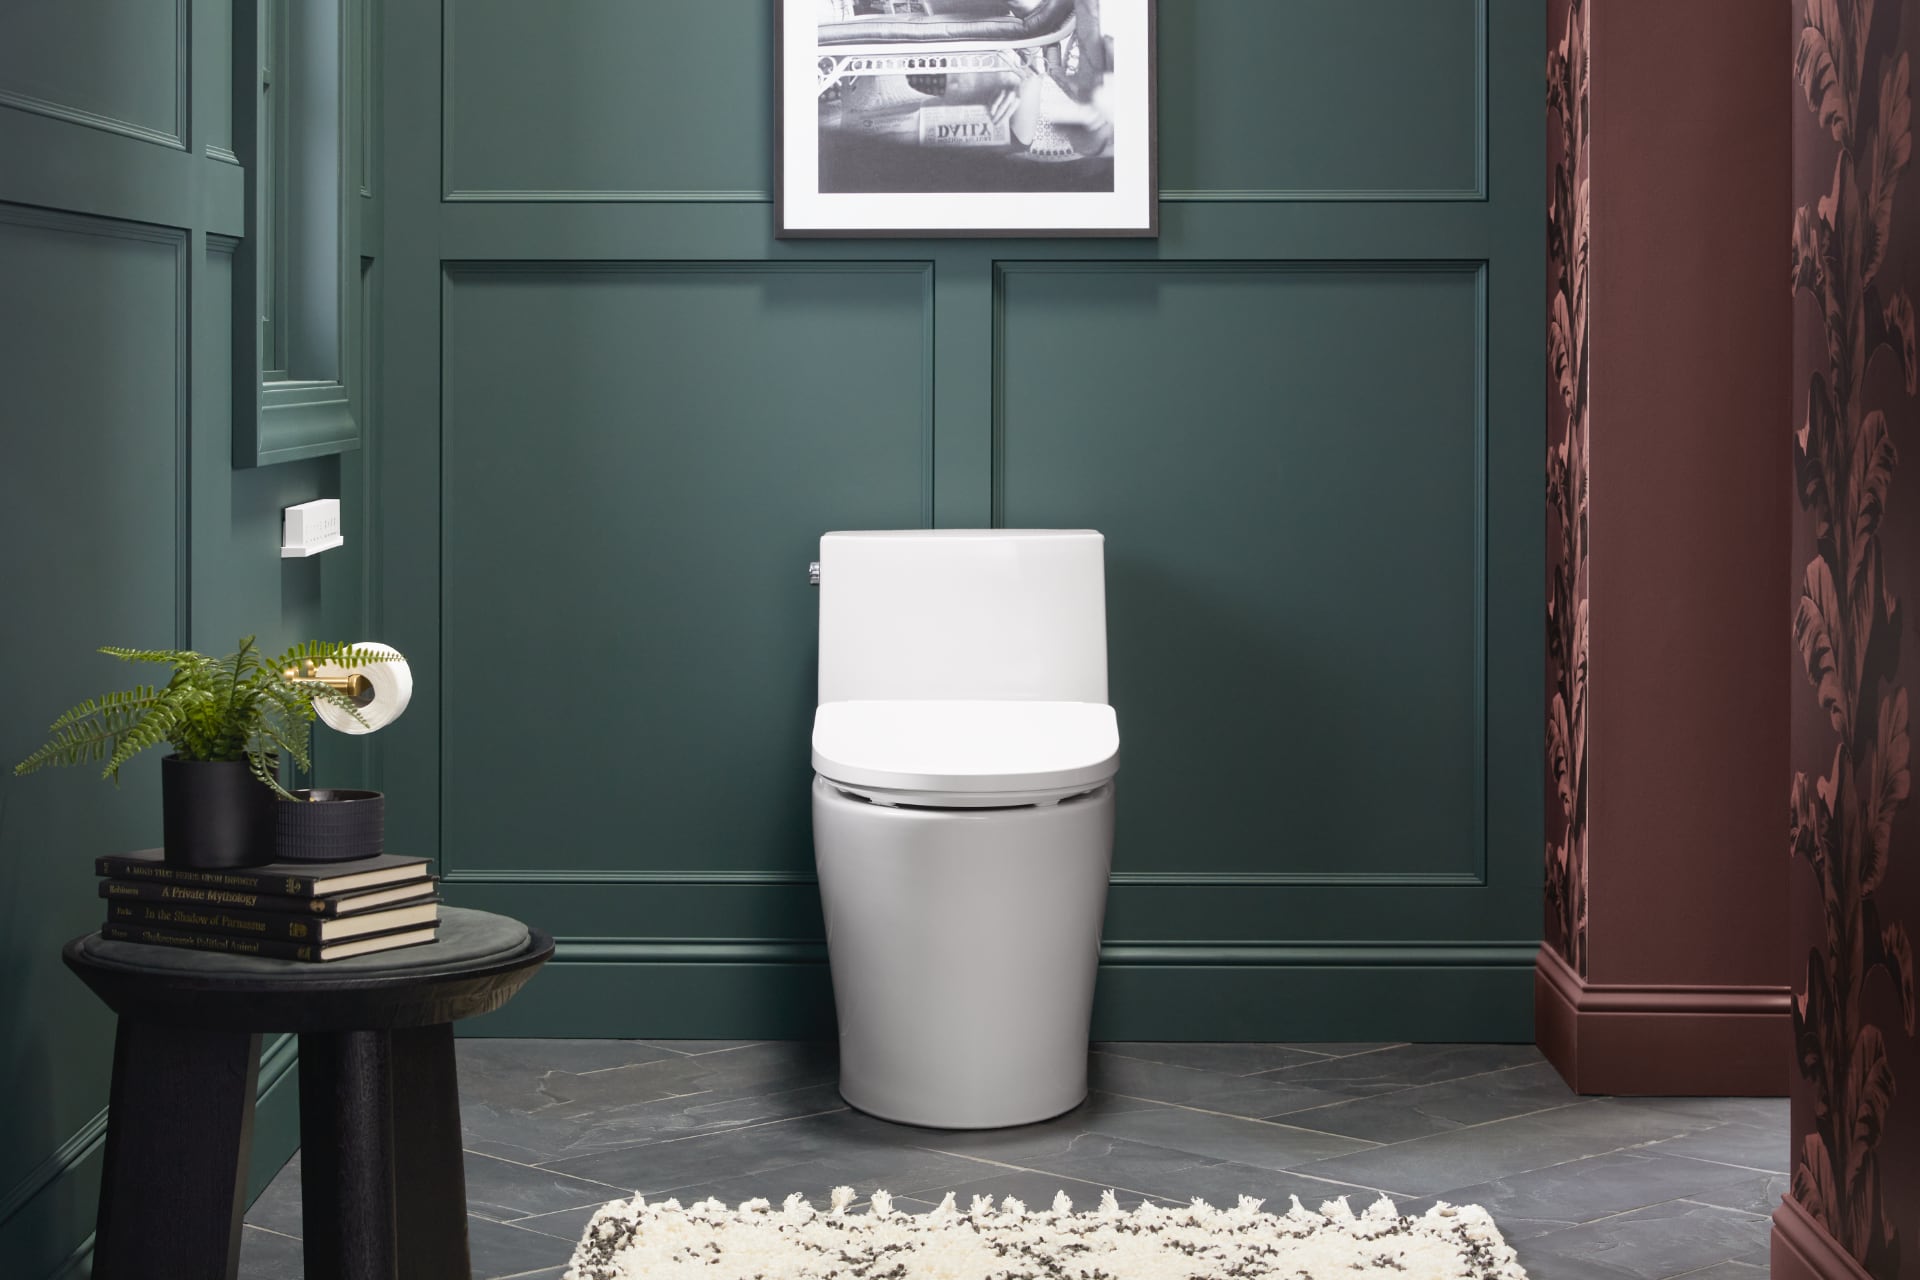 At komme til sagens kerne: Kohler PureWash E930 toiletsæde med Google og Amazon Alexa-2